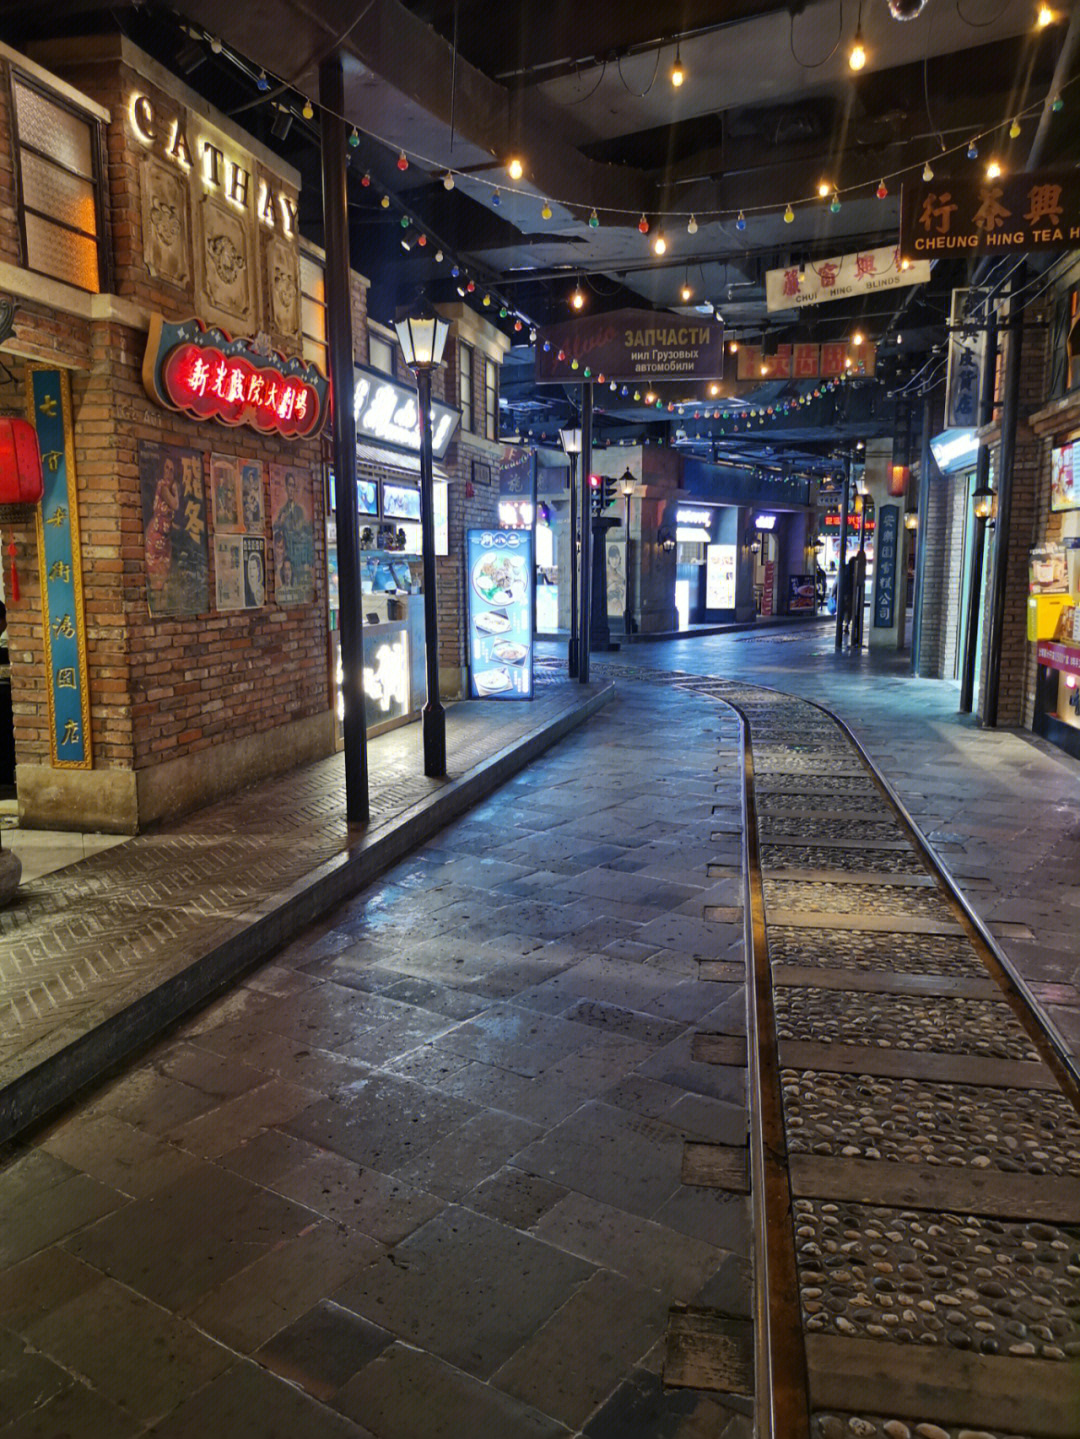 老上海风情美食街,其实吃的就是一种情怀,装修风格是非常怀旧的老上海